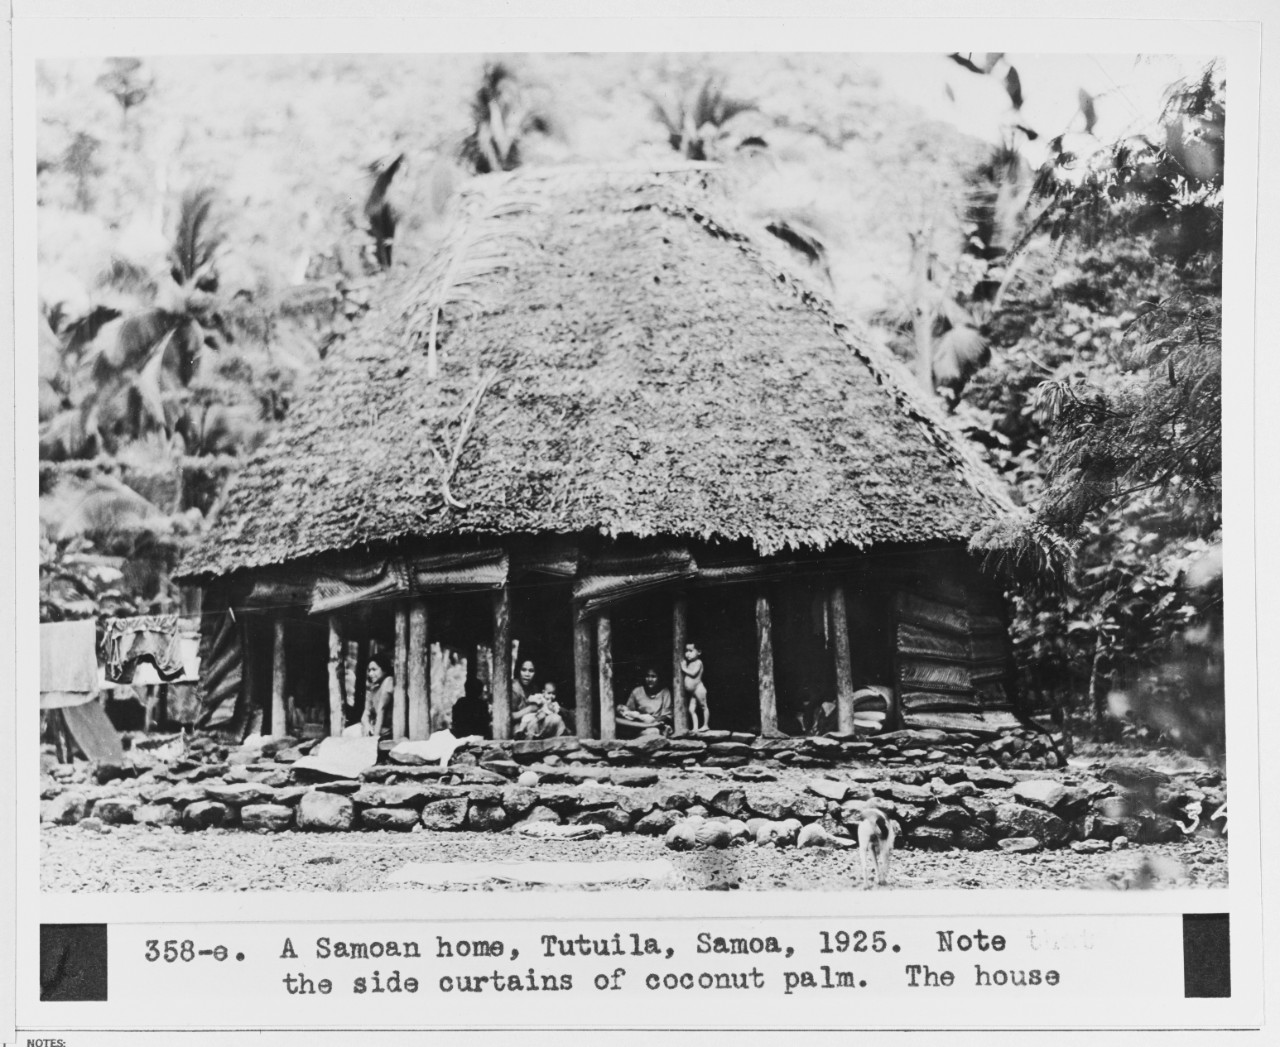 A native home at Tutulia, Samoa, 1925.